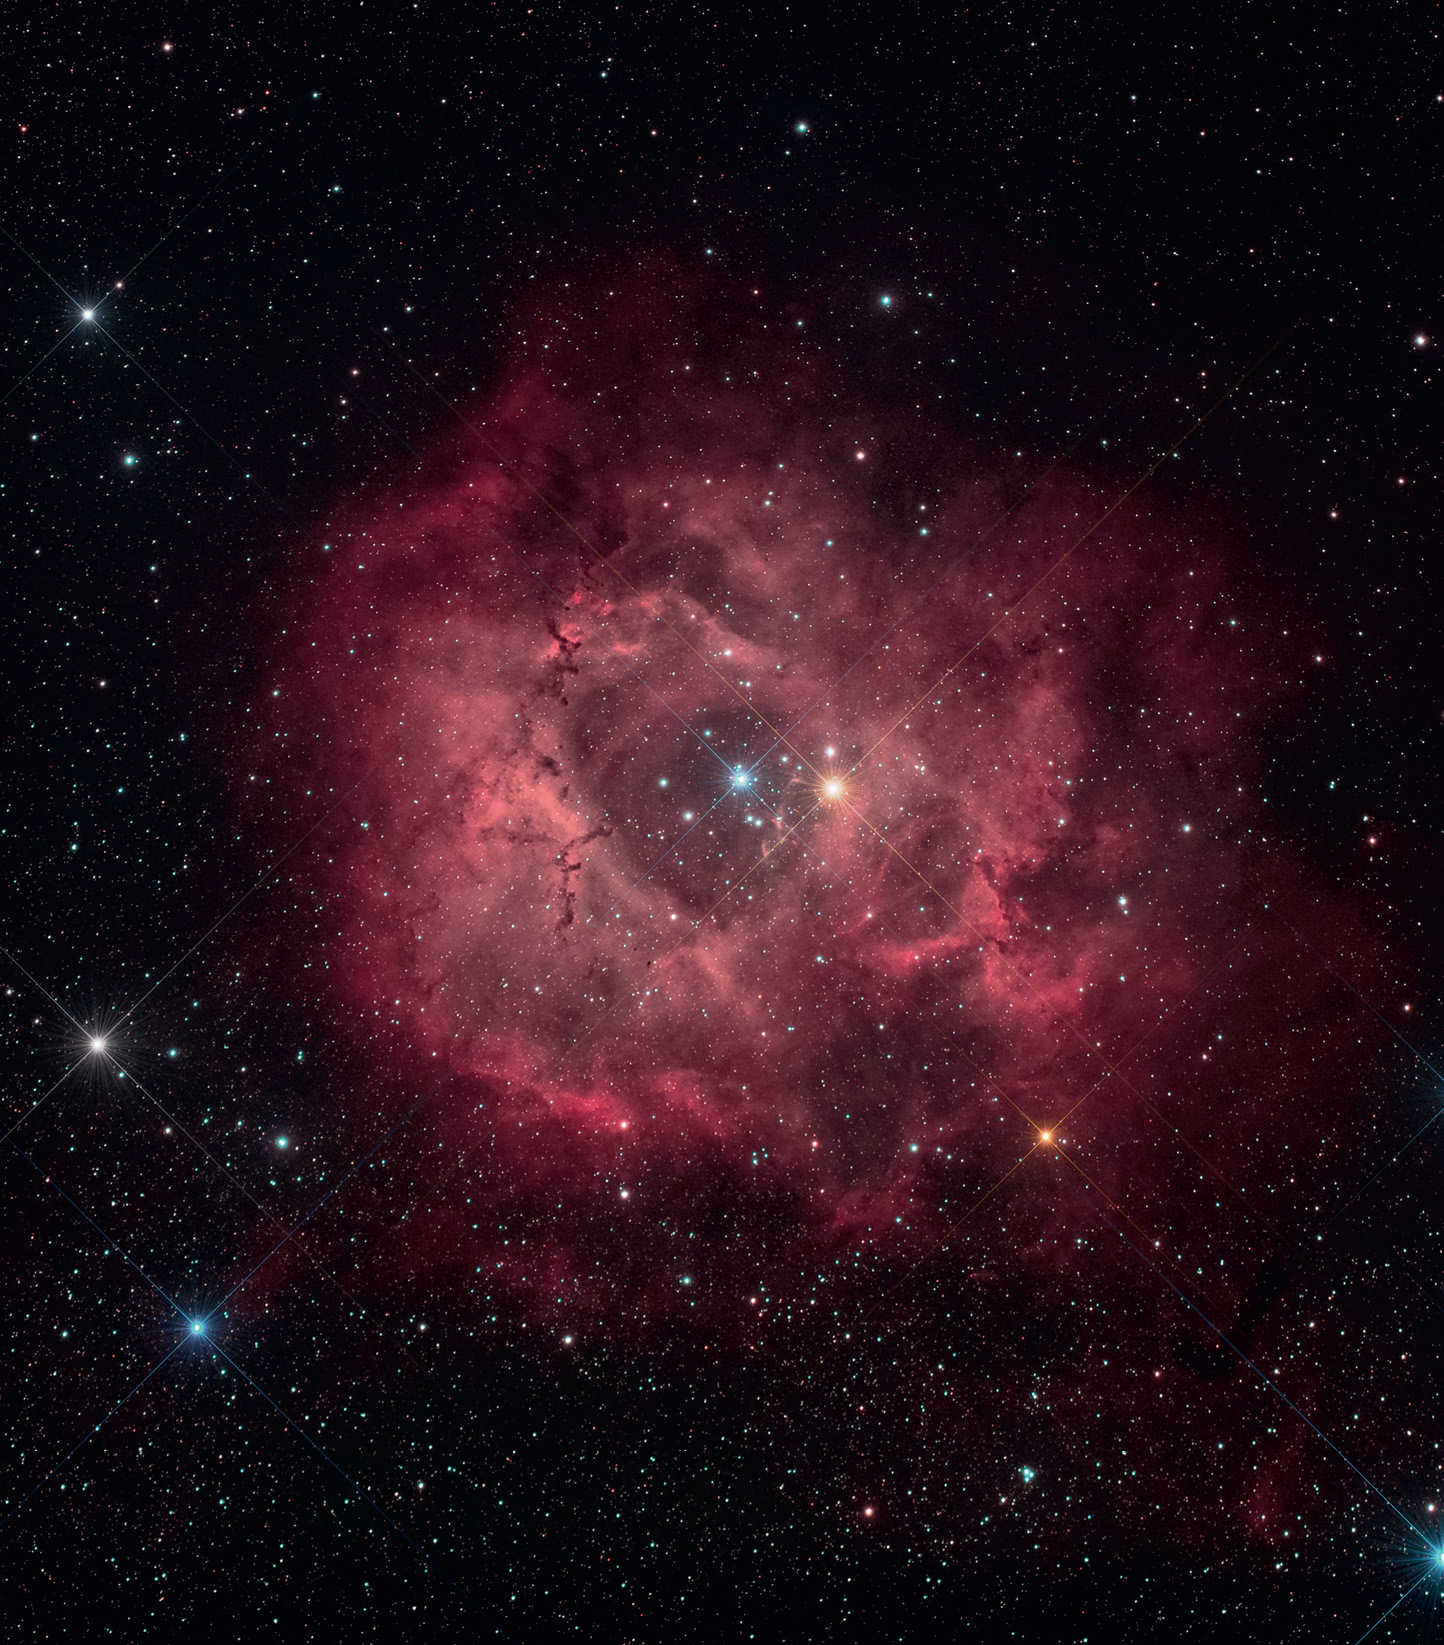 Zdjęcie mgławicy Rozeta (NGC 2244). Obraz sumaryczny składa się z 14 klatek o czasie naświetlania 300 sekund każda (ISO 1600; łączny czas naświetlania: 70 minut). Reszta danych zgodna z podanymi przy zdjęciu nr 1. U. Dittler